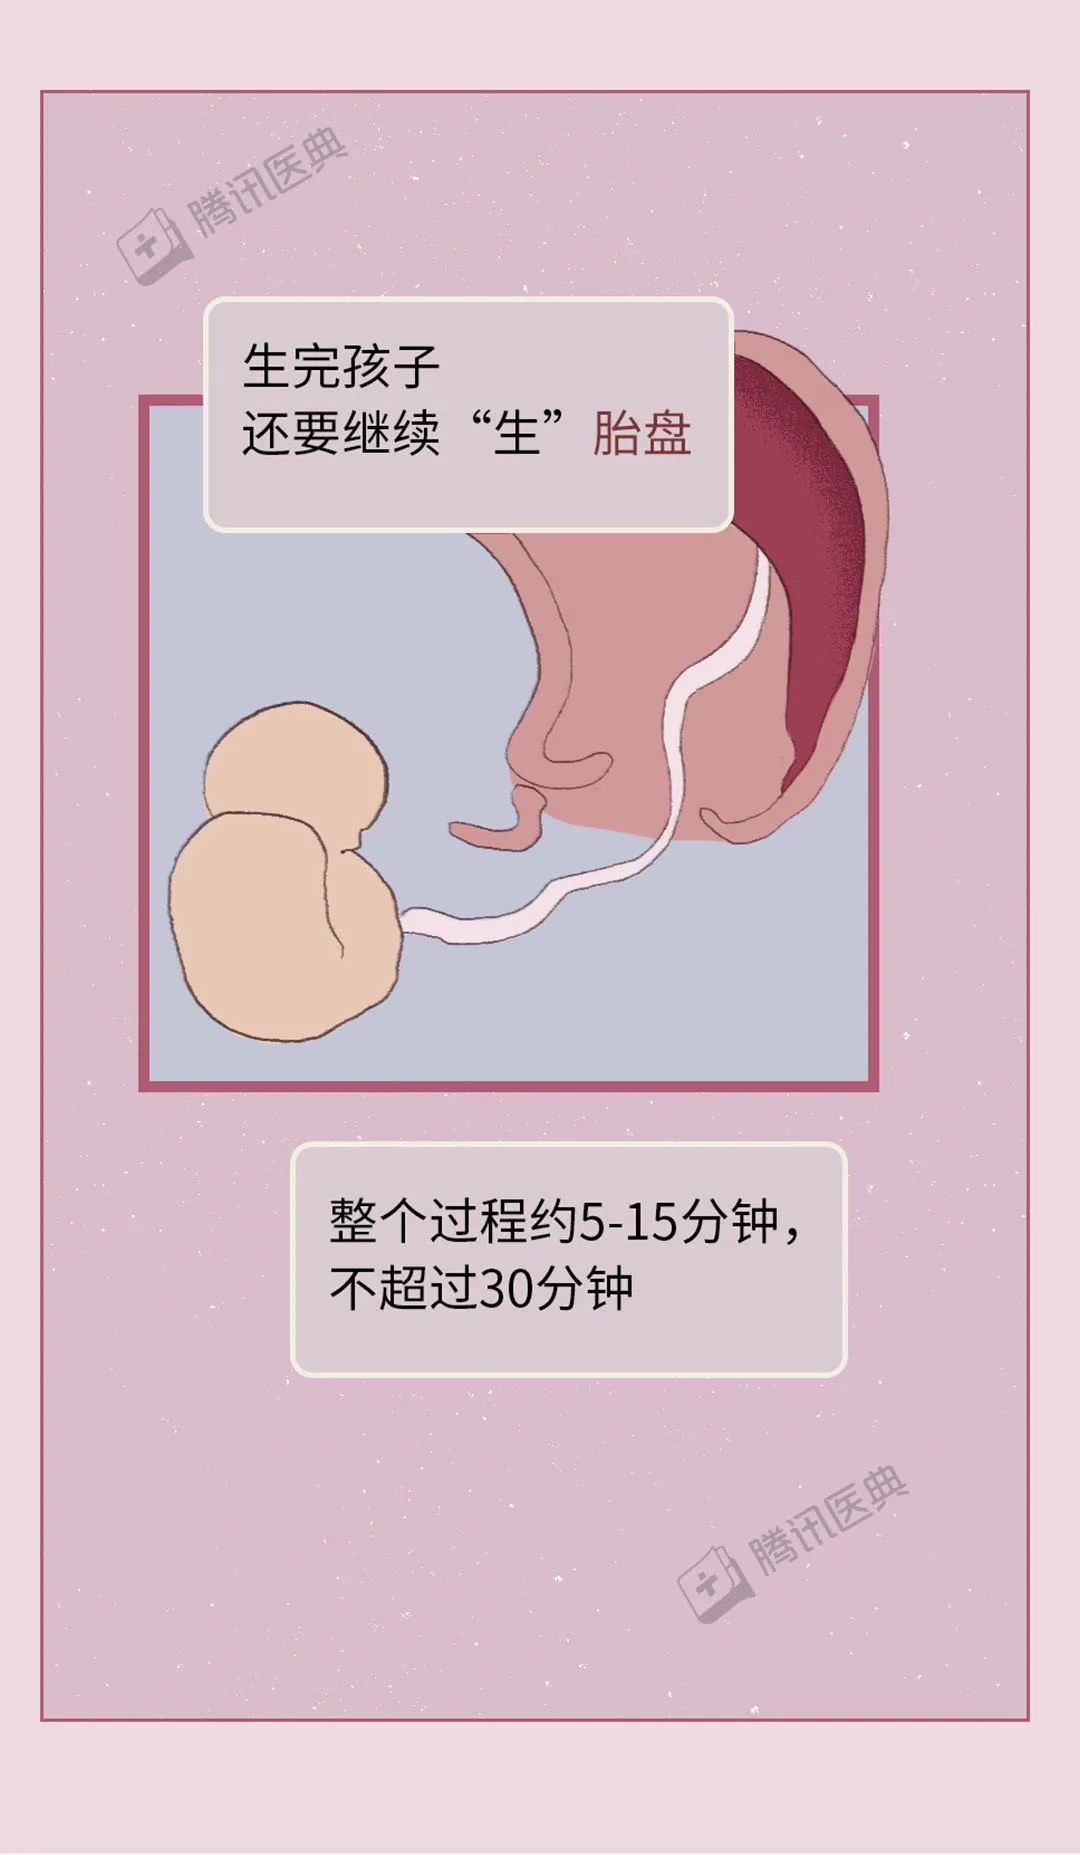 分娩机制是什么意思 过程包括哪些